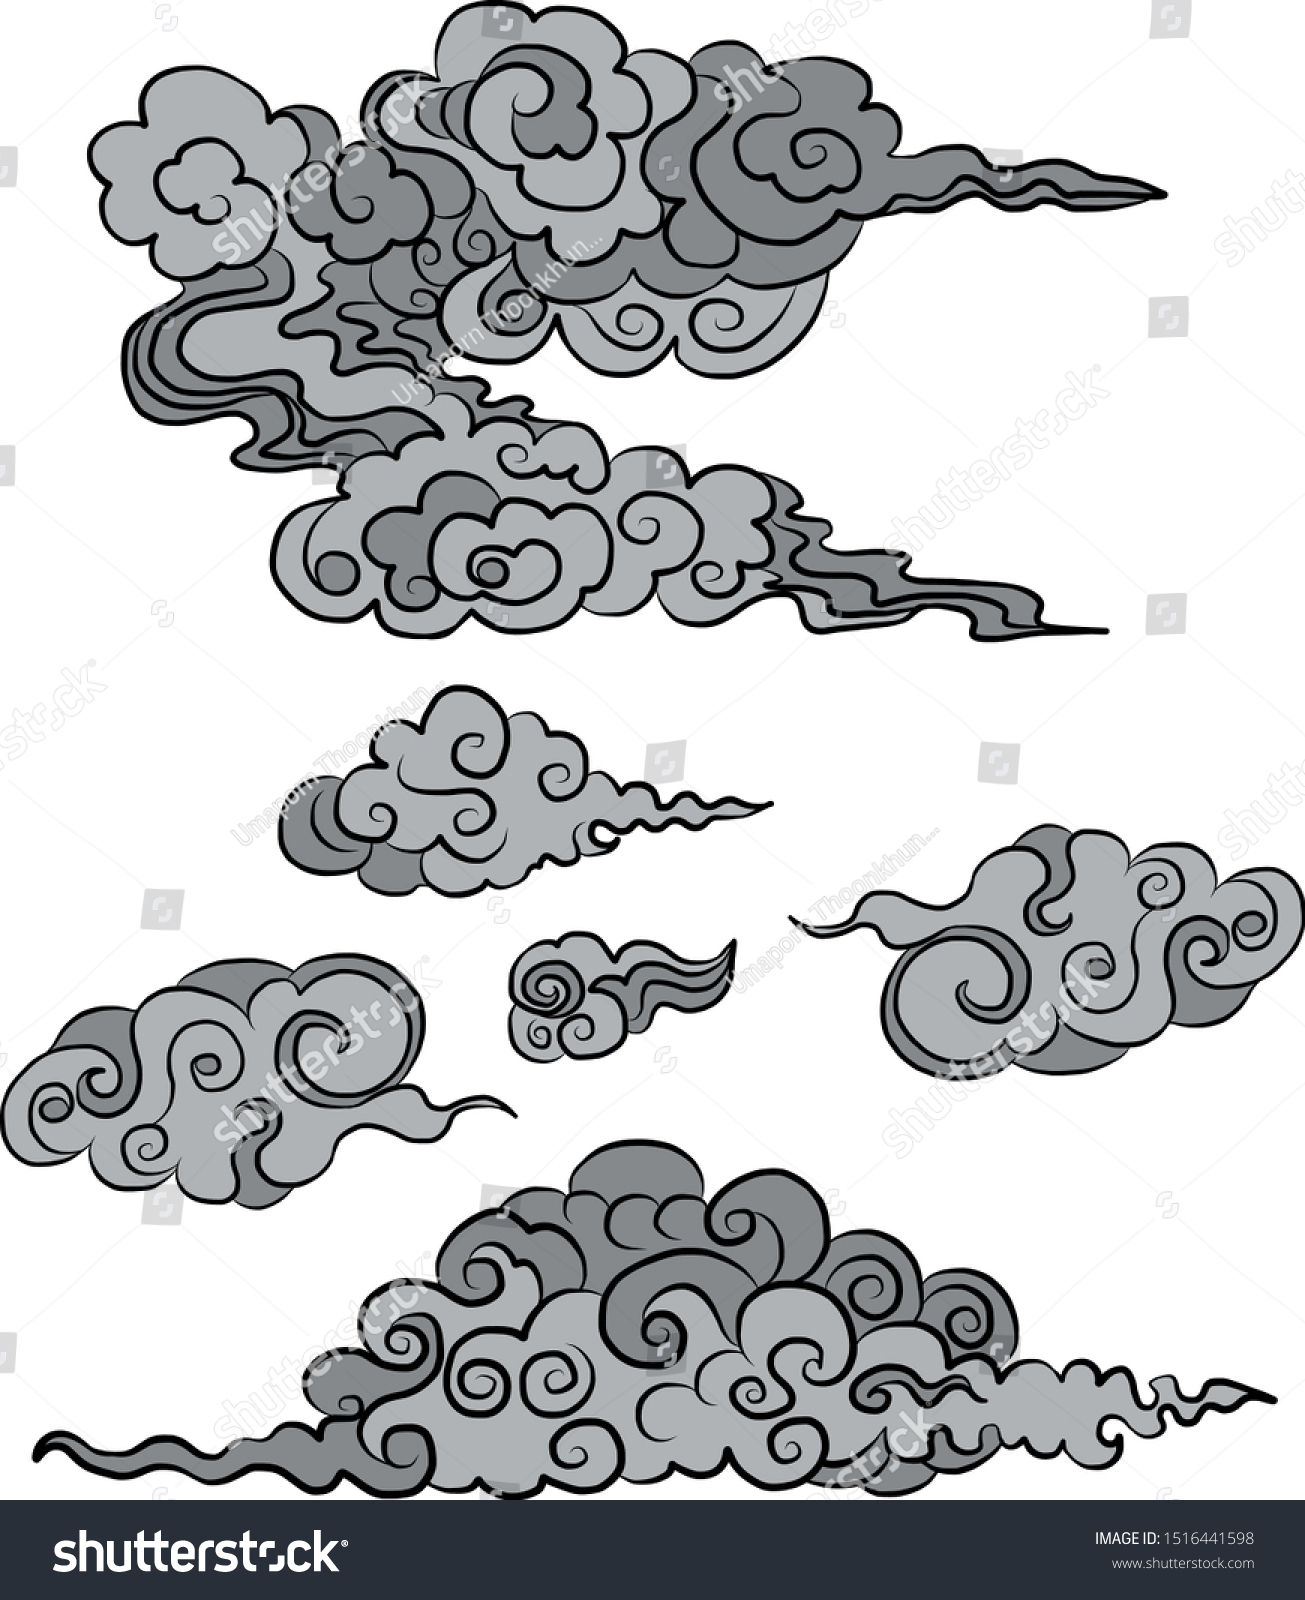 Облака в китайском стиле